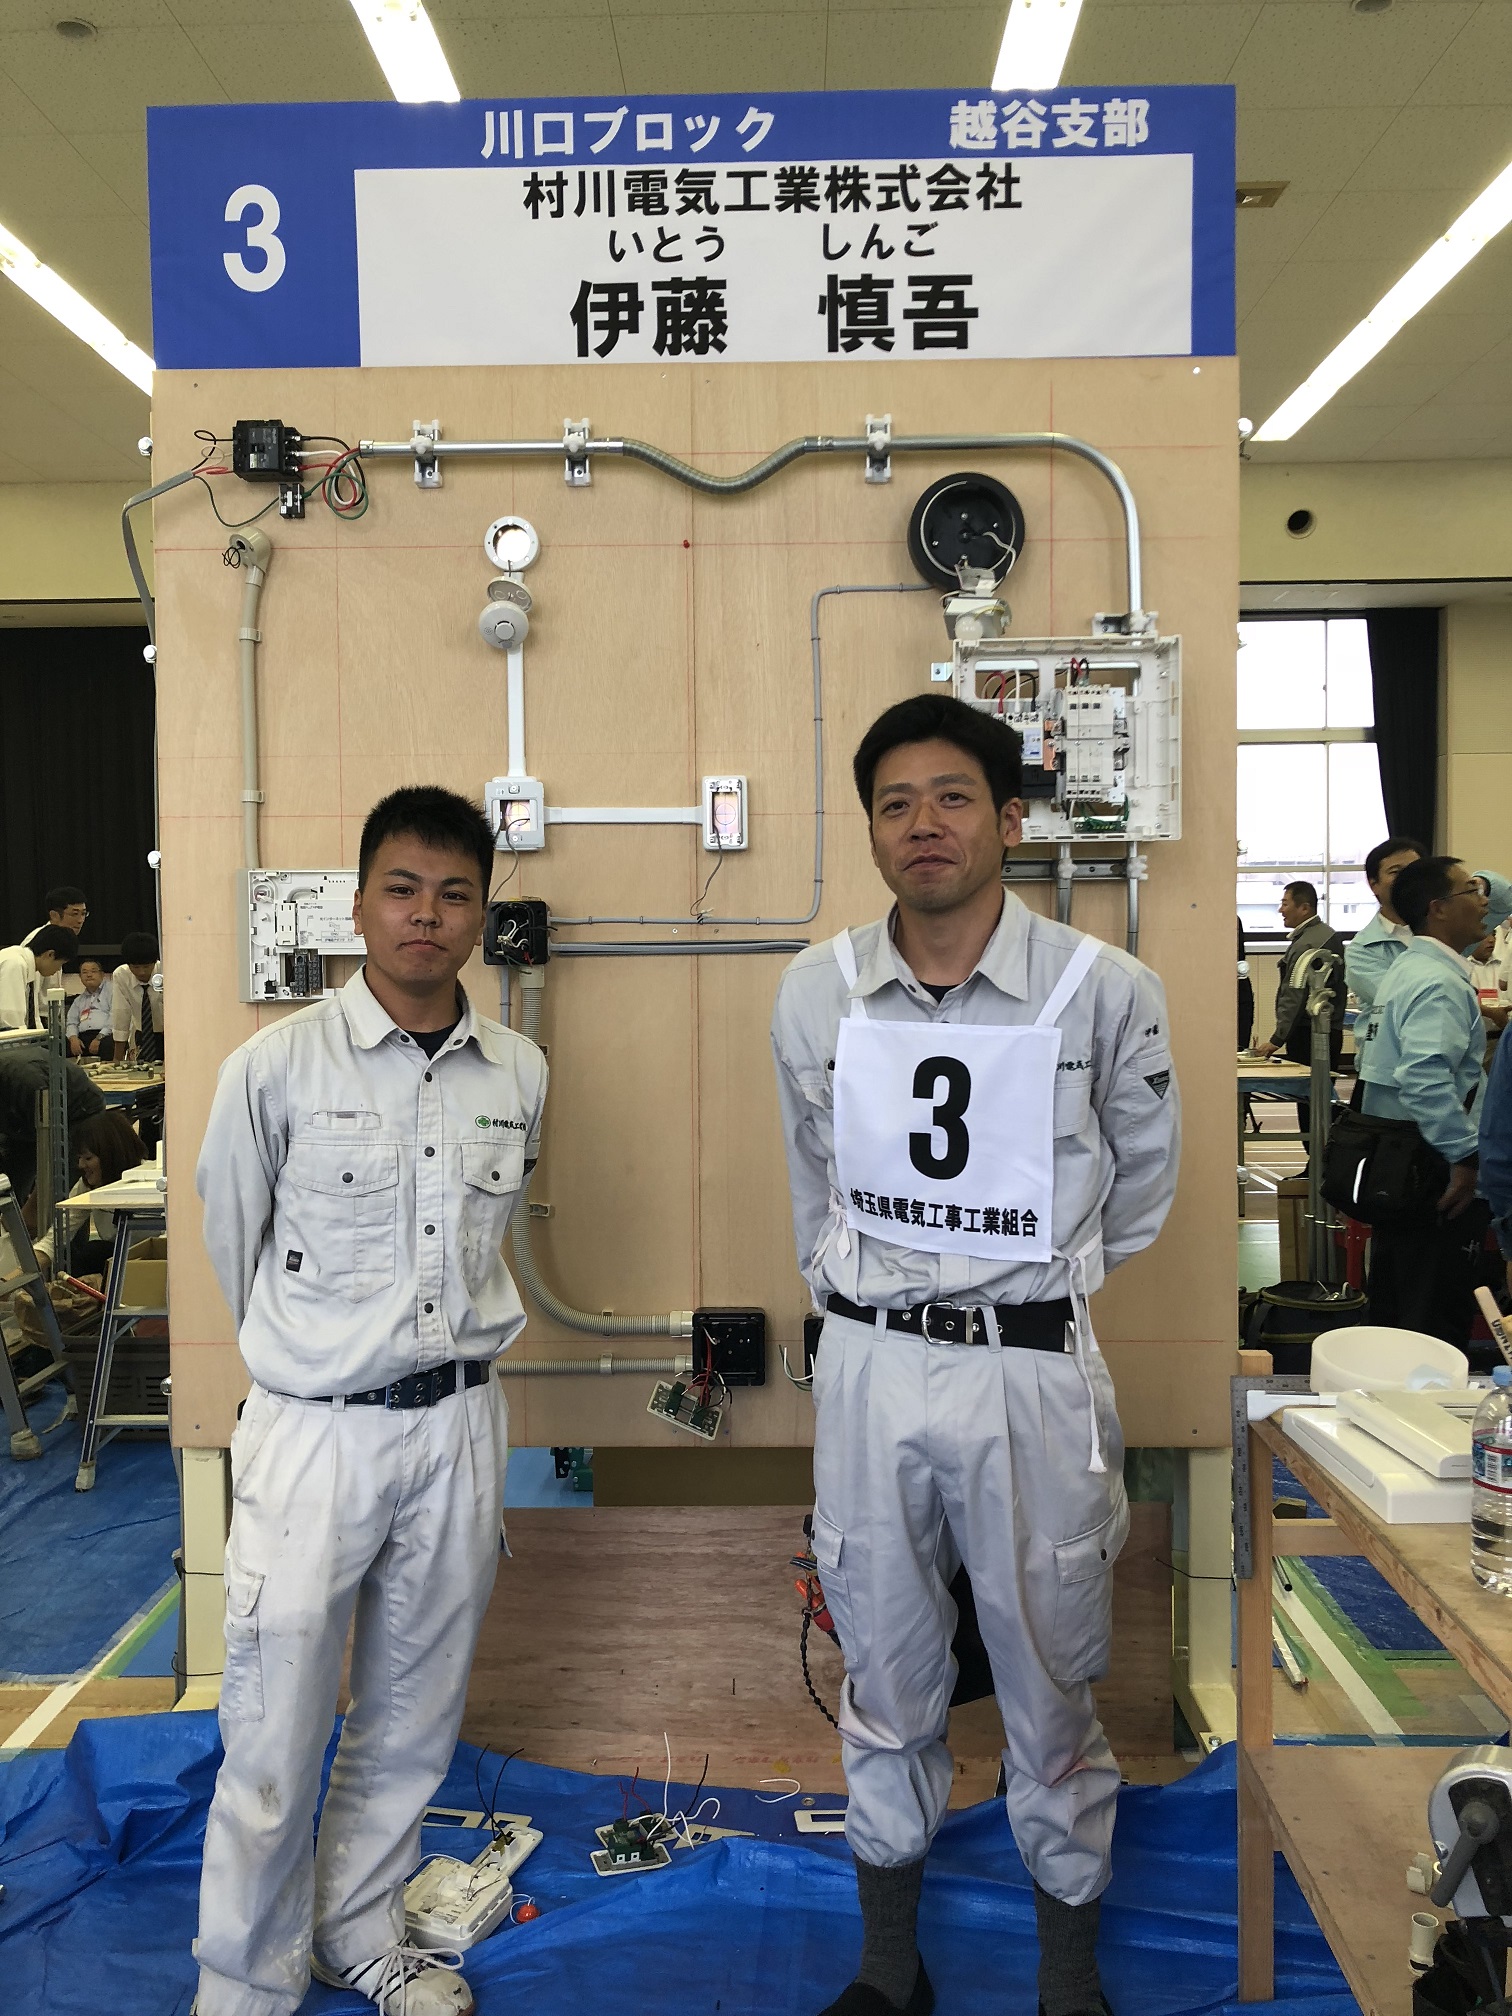 第1回埼玉県電気工事技能競技大会に出場のイメージ